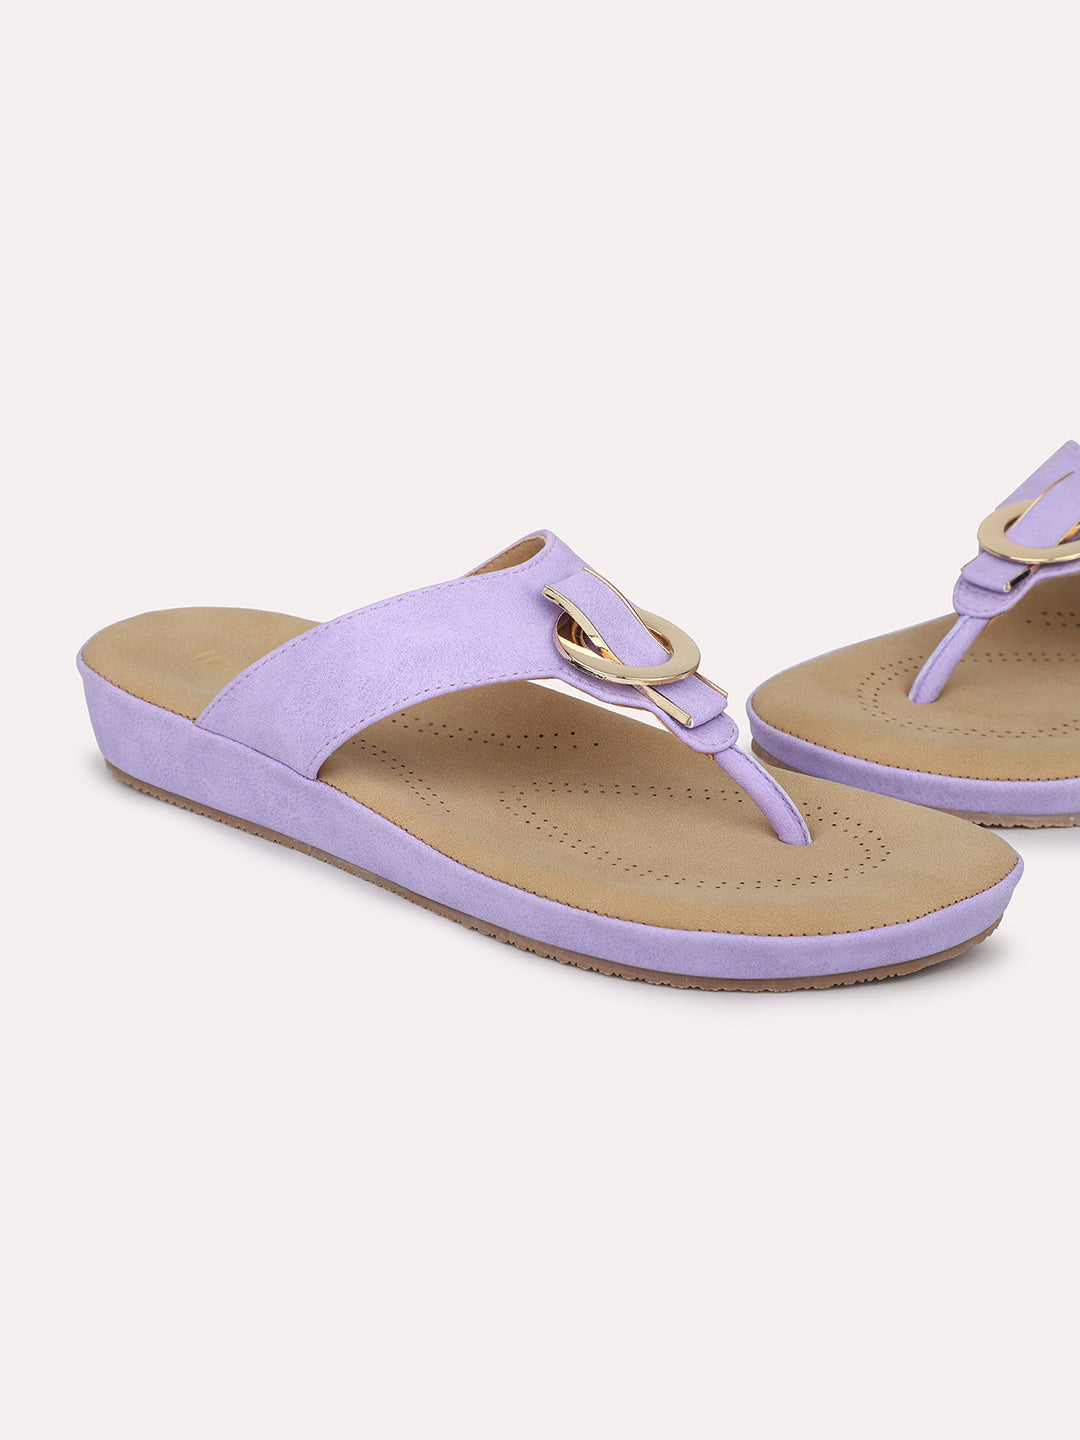 Women Purple Solid Comfort Heels Sandals